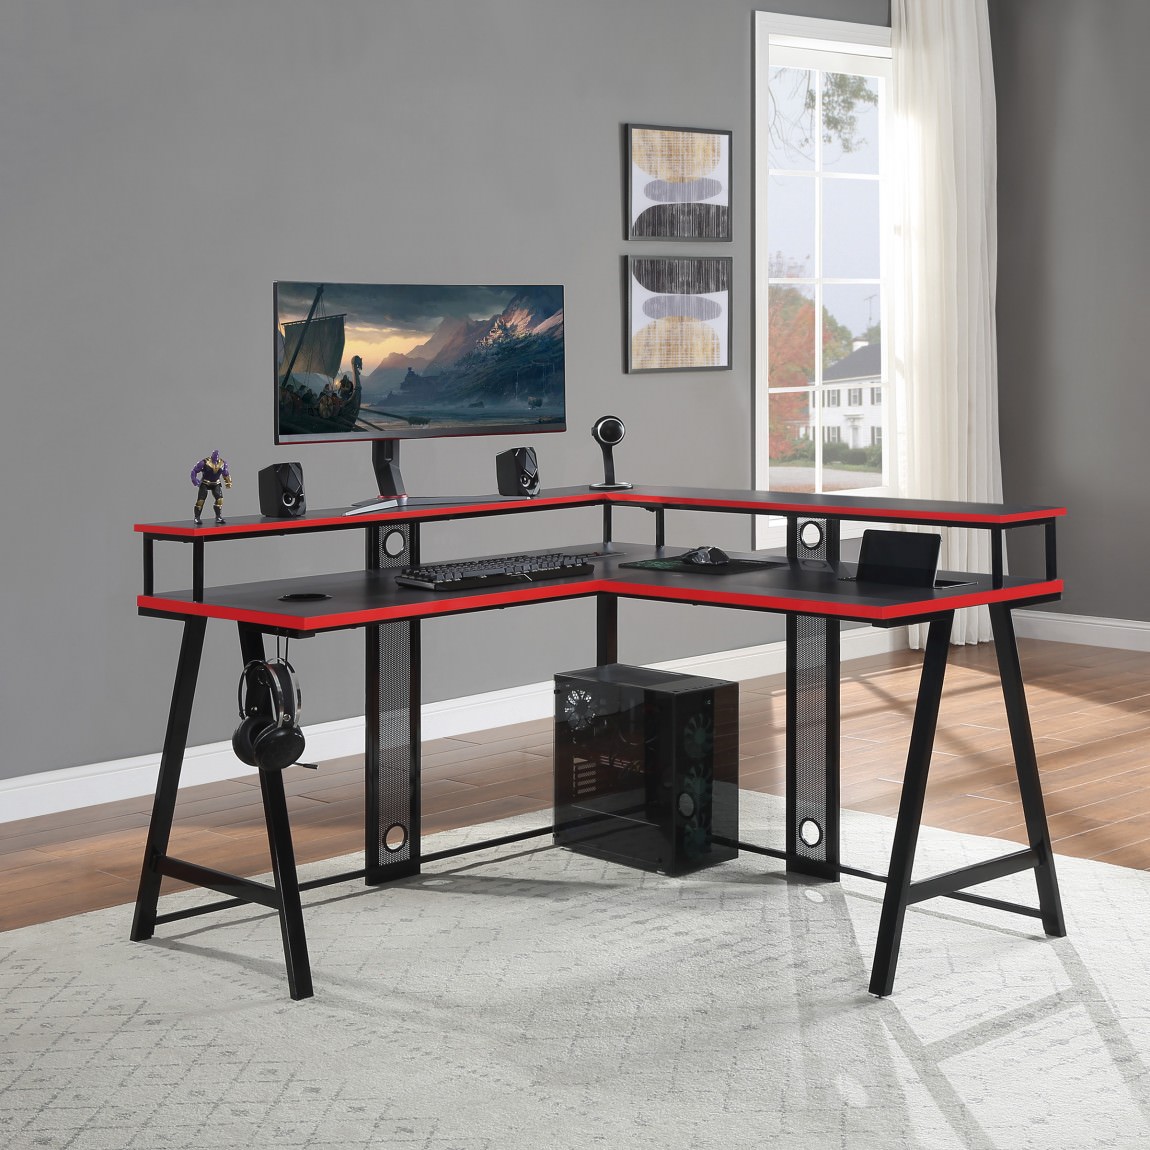 https://madisonliquidators.com/images/p/1150/25268-l-shaped-gaming-desk-with-led-lights-1.jpg